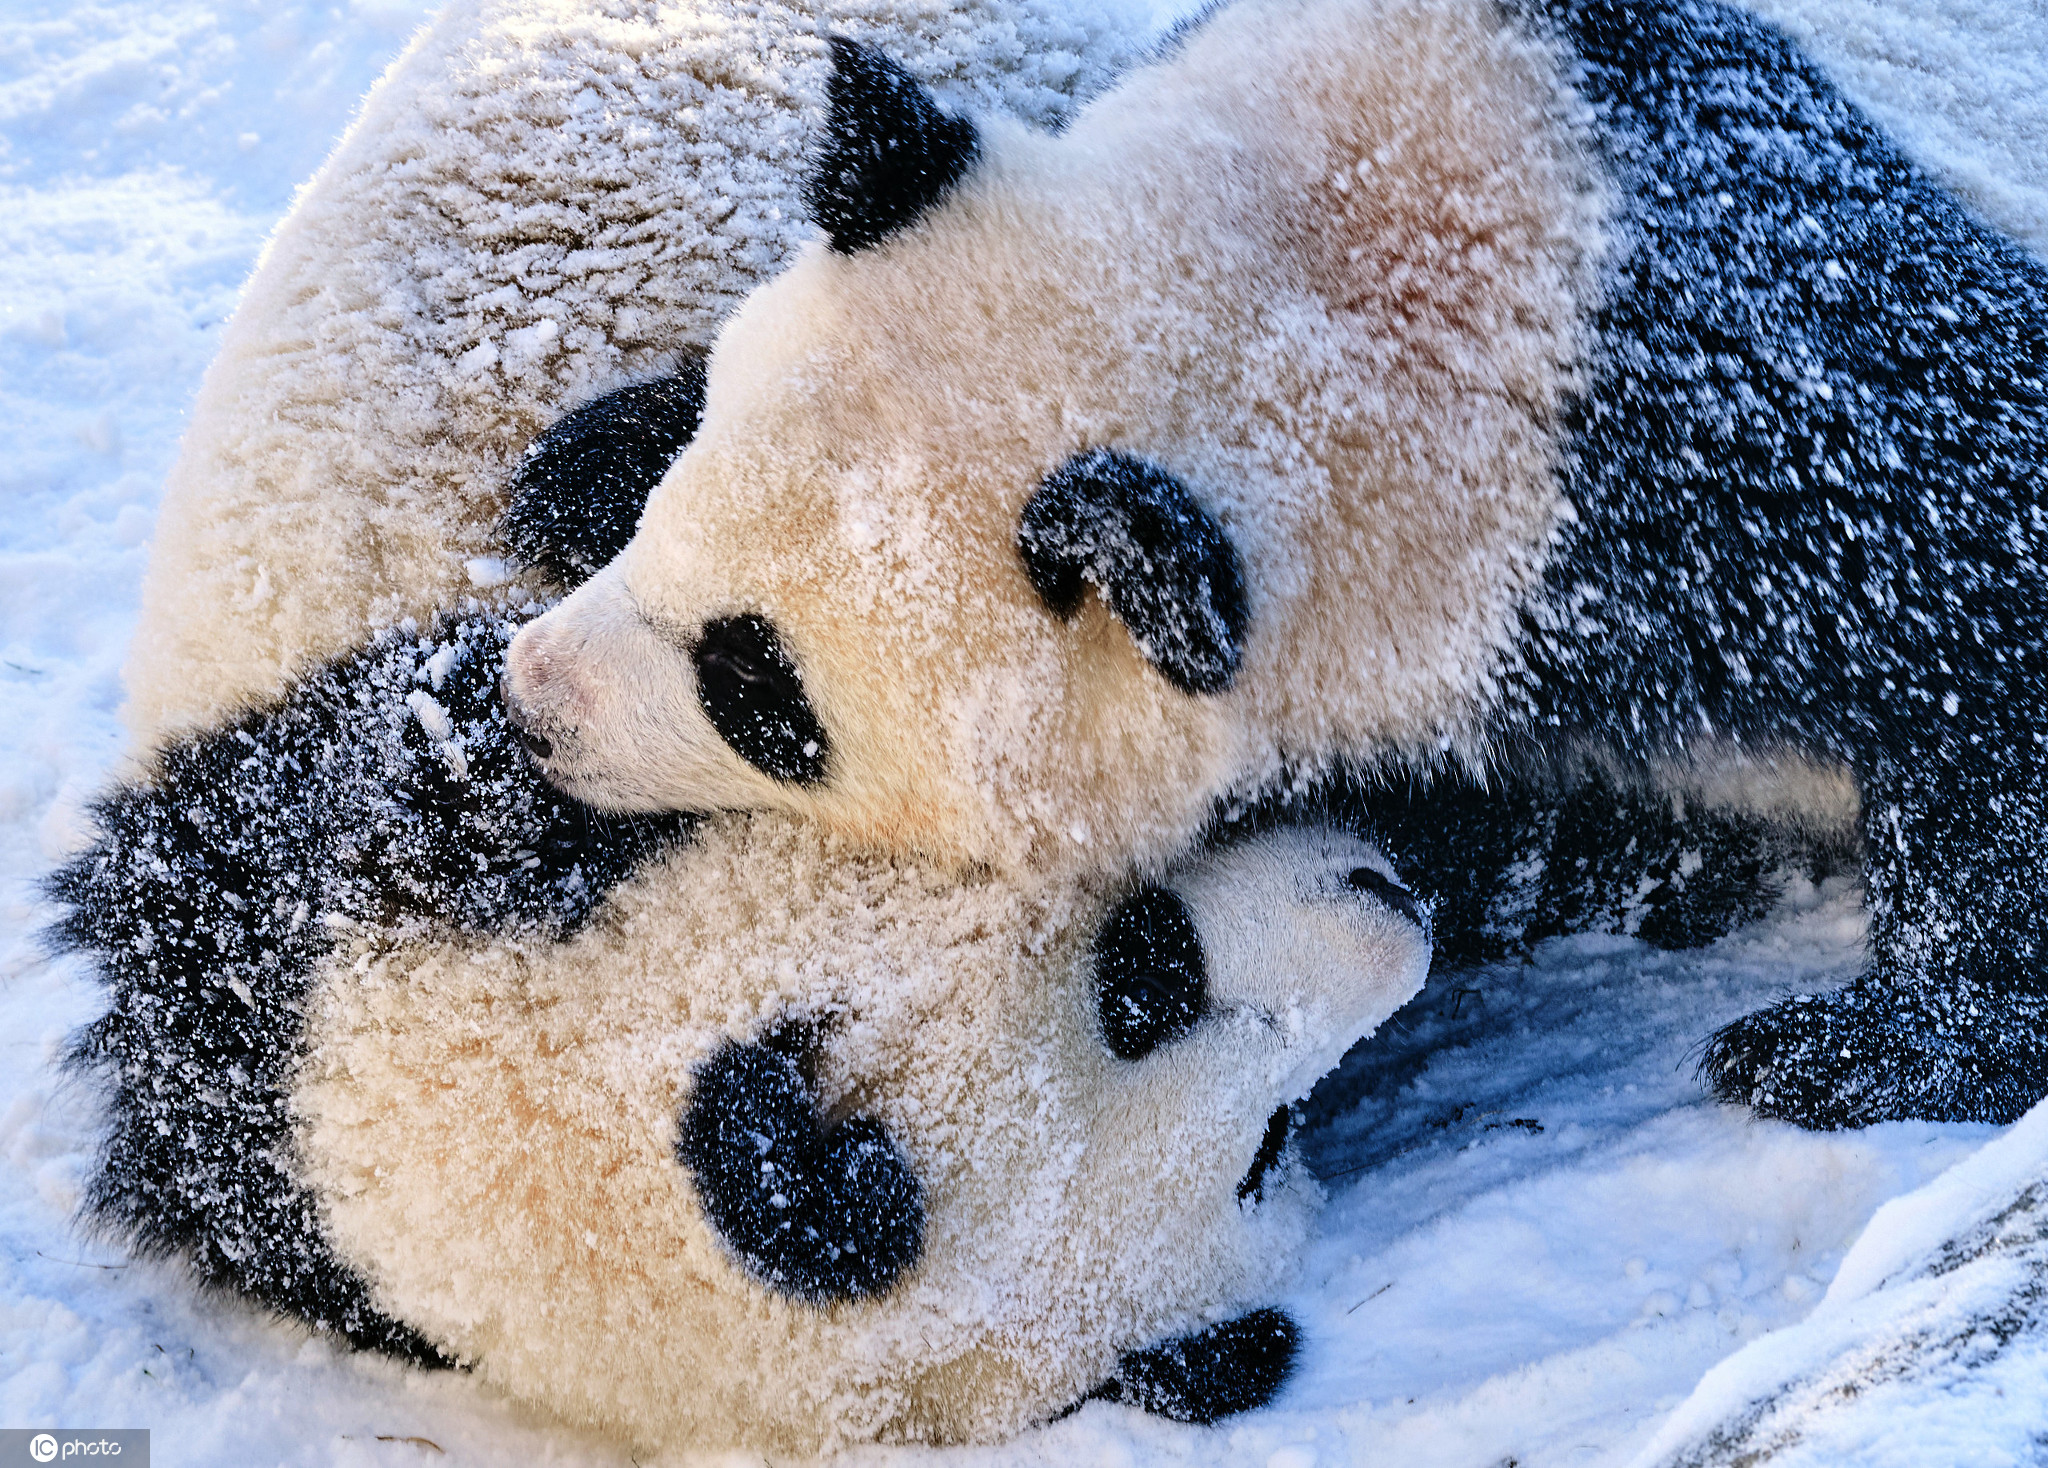 萌翻!柏林动物园大熊猫雪地里开心撒欢